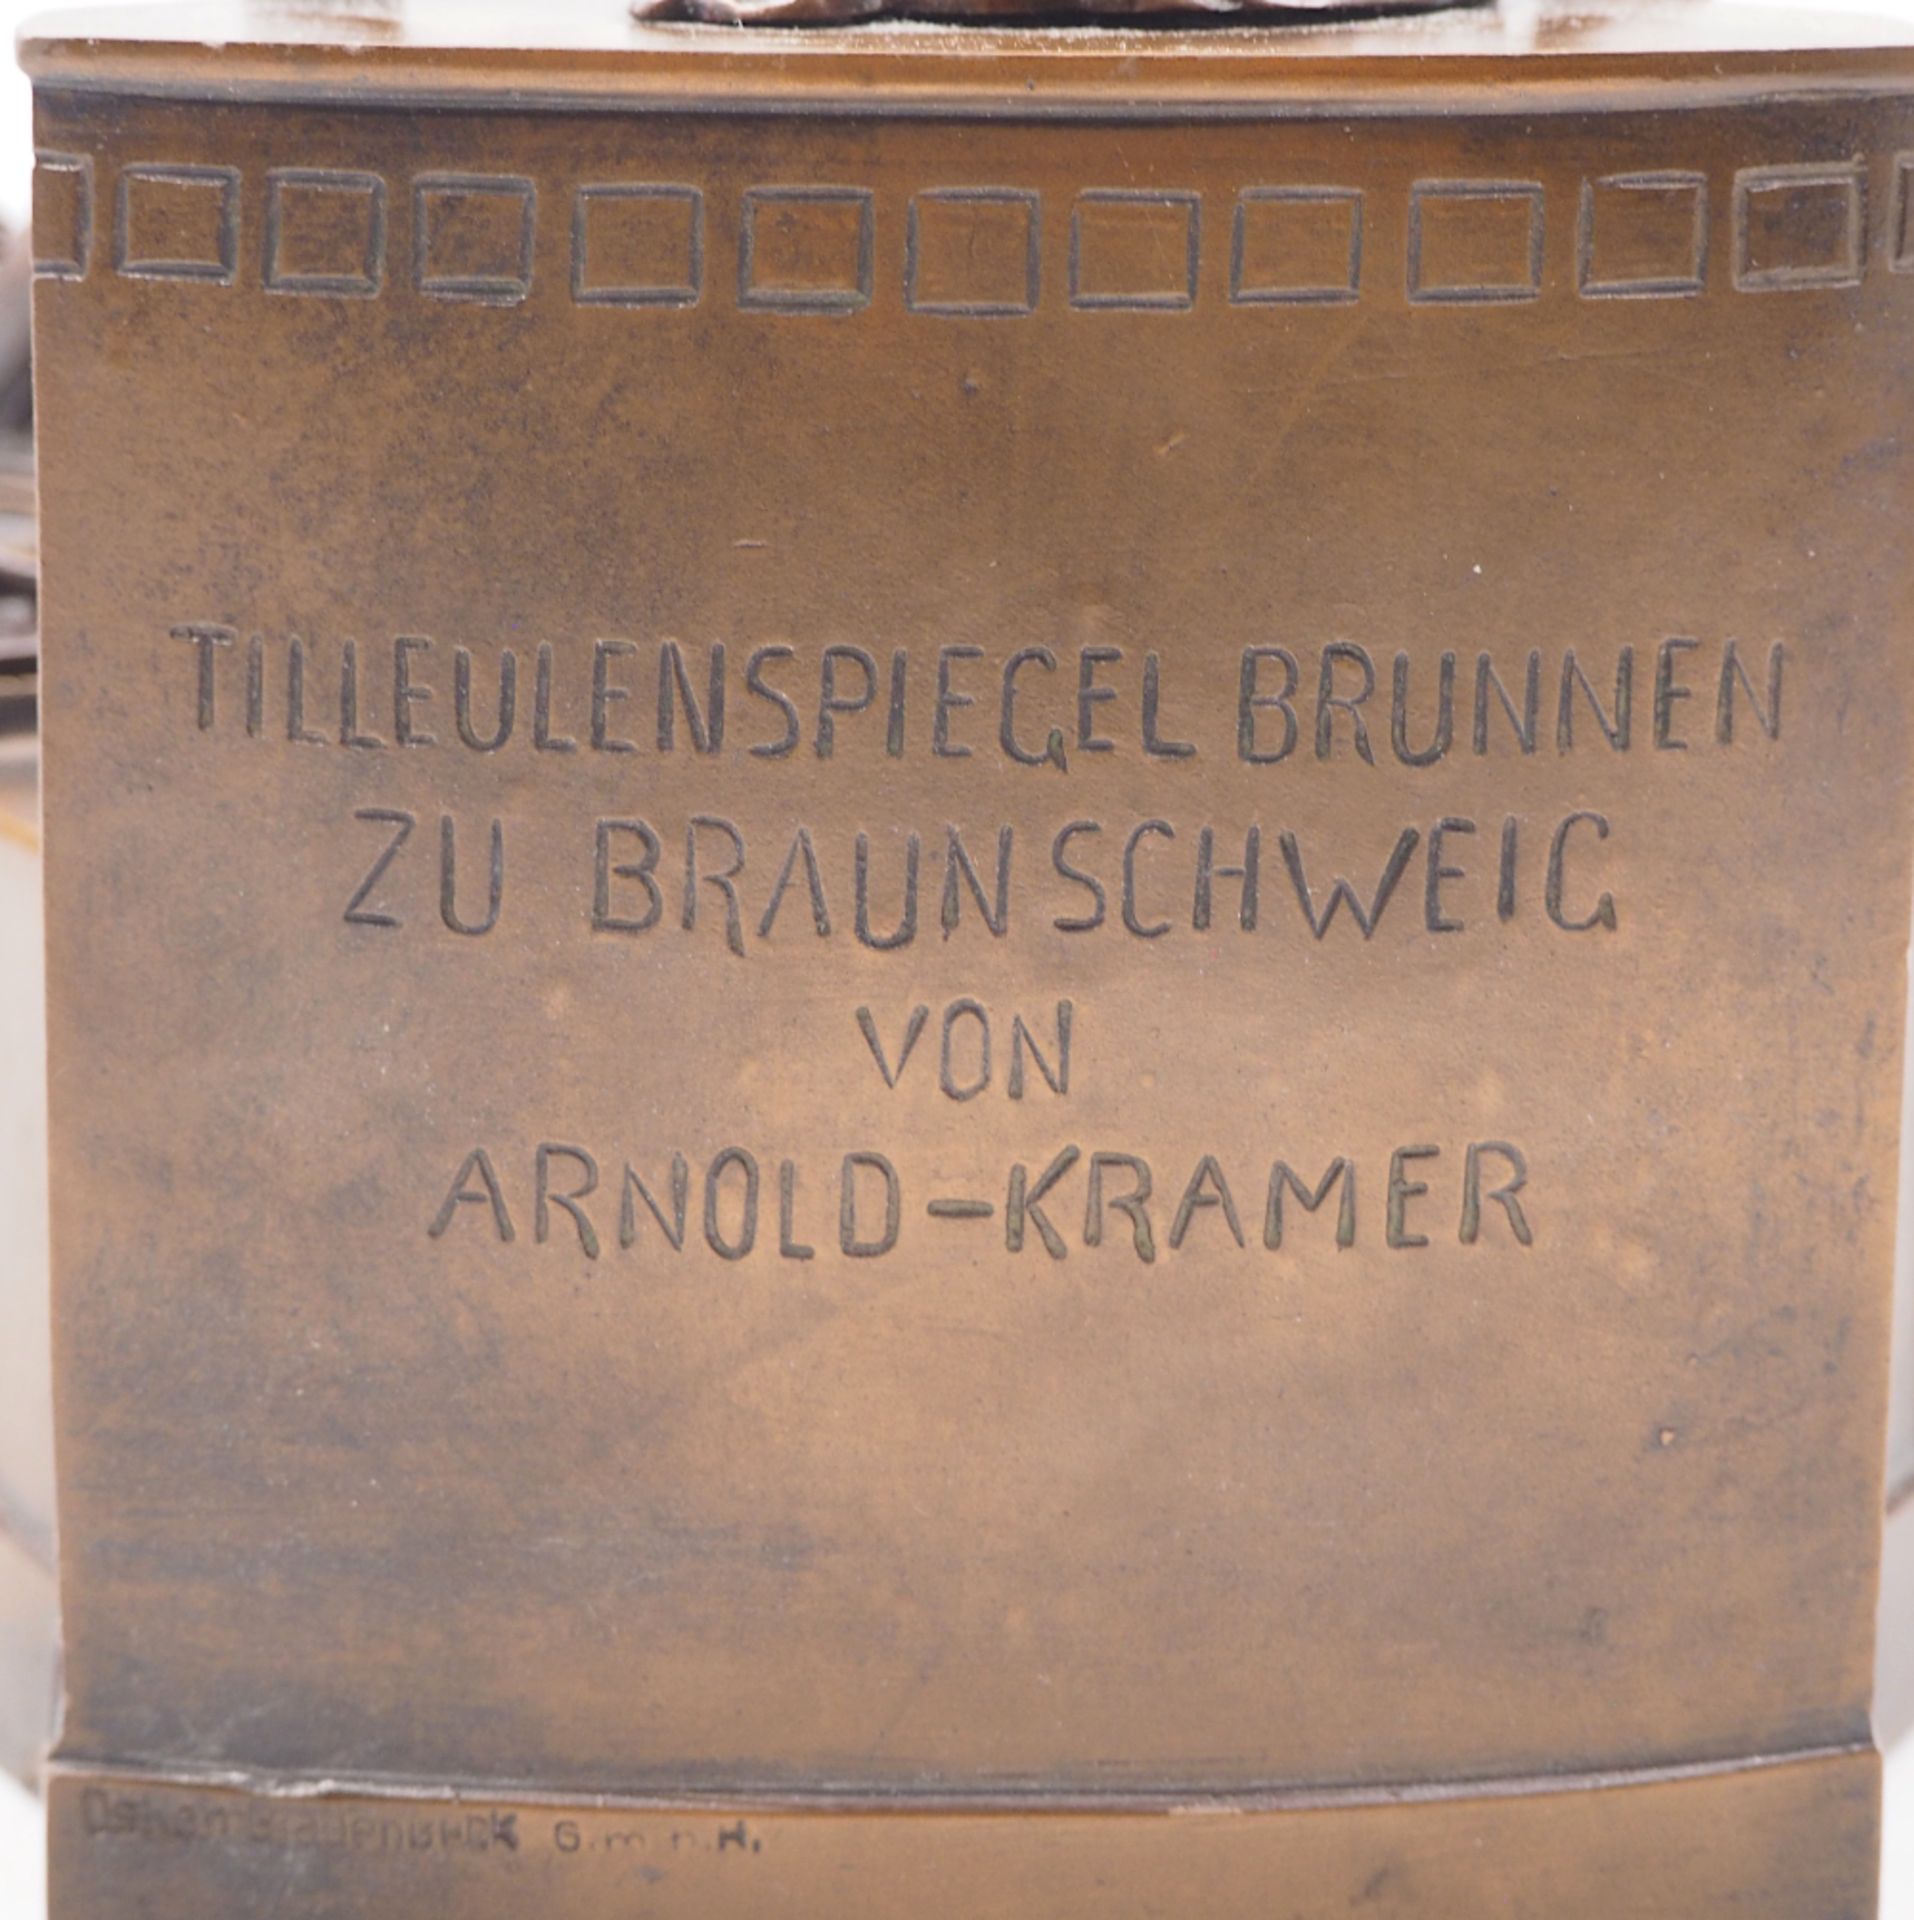 1 Skulptur Bronze wohl um 1900/1910 "Till Eulenspiegel Brunnen zu Braunschweig von Arnold-KRAMER" - Image 4 of 7